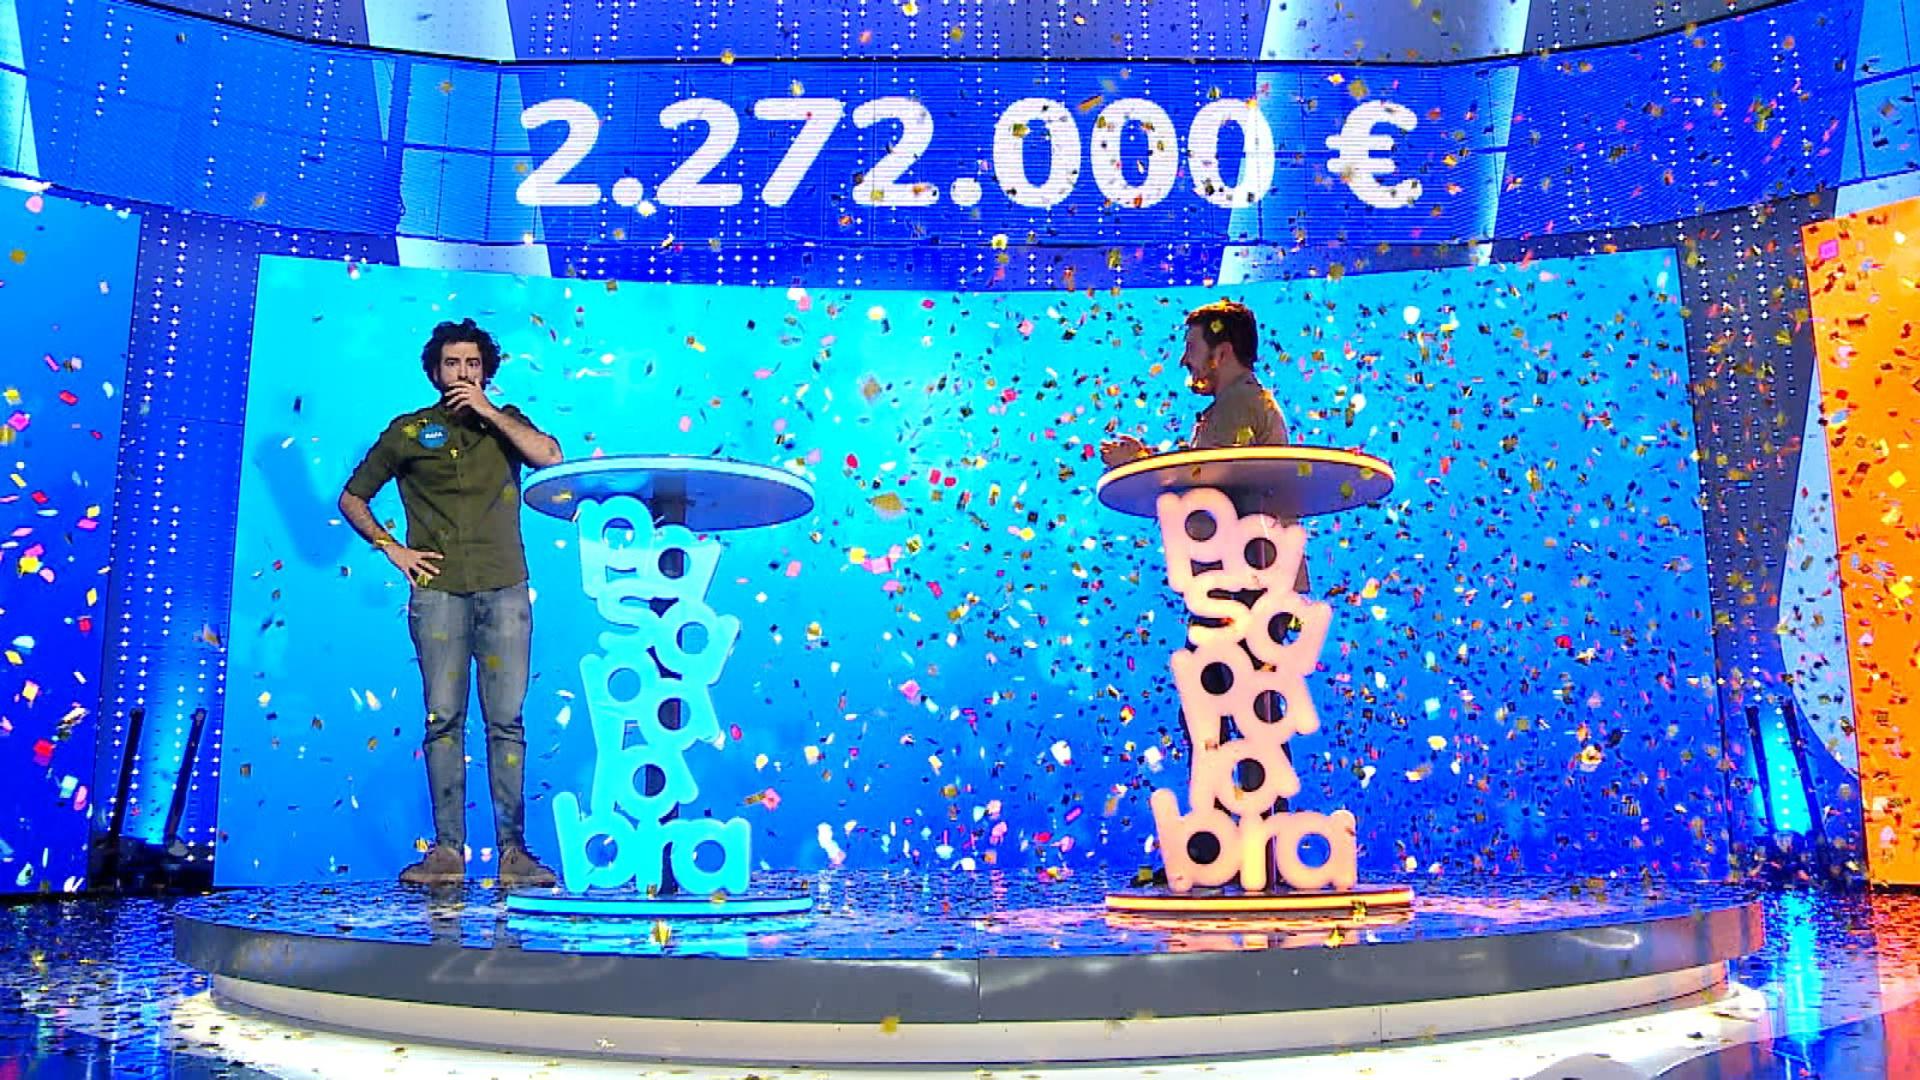 El concursante Rafa Castaño ha conseguido llevarse el mayor bote de la historia del programa de Antena 3 "Pasapalabra", 2.272.000 euros. Imagen cedida por Antena 3. SOLO USO EDITORIAL
